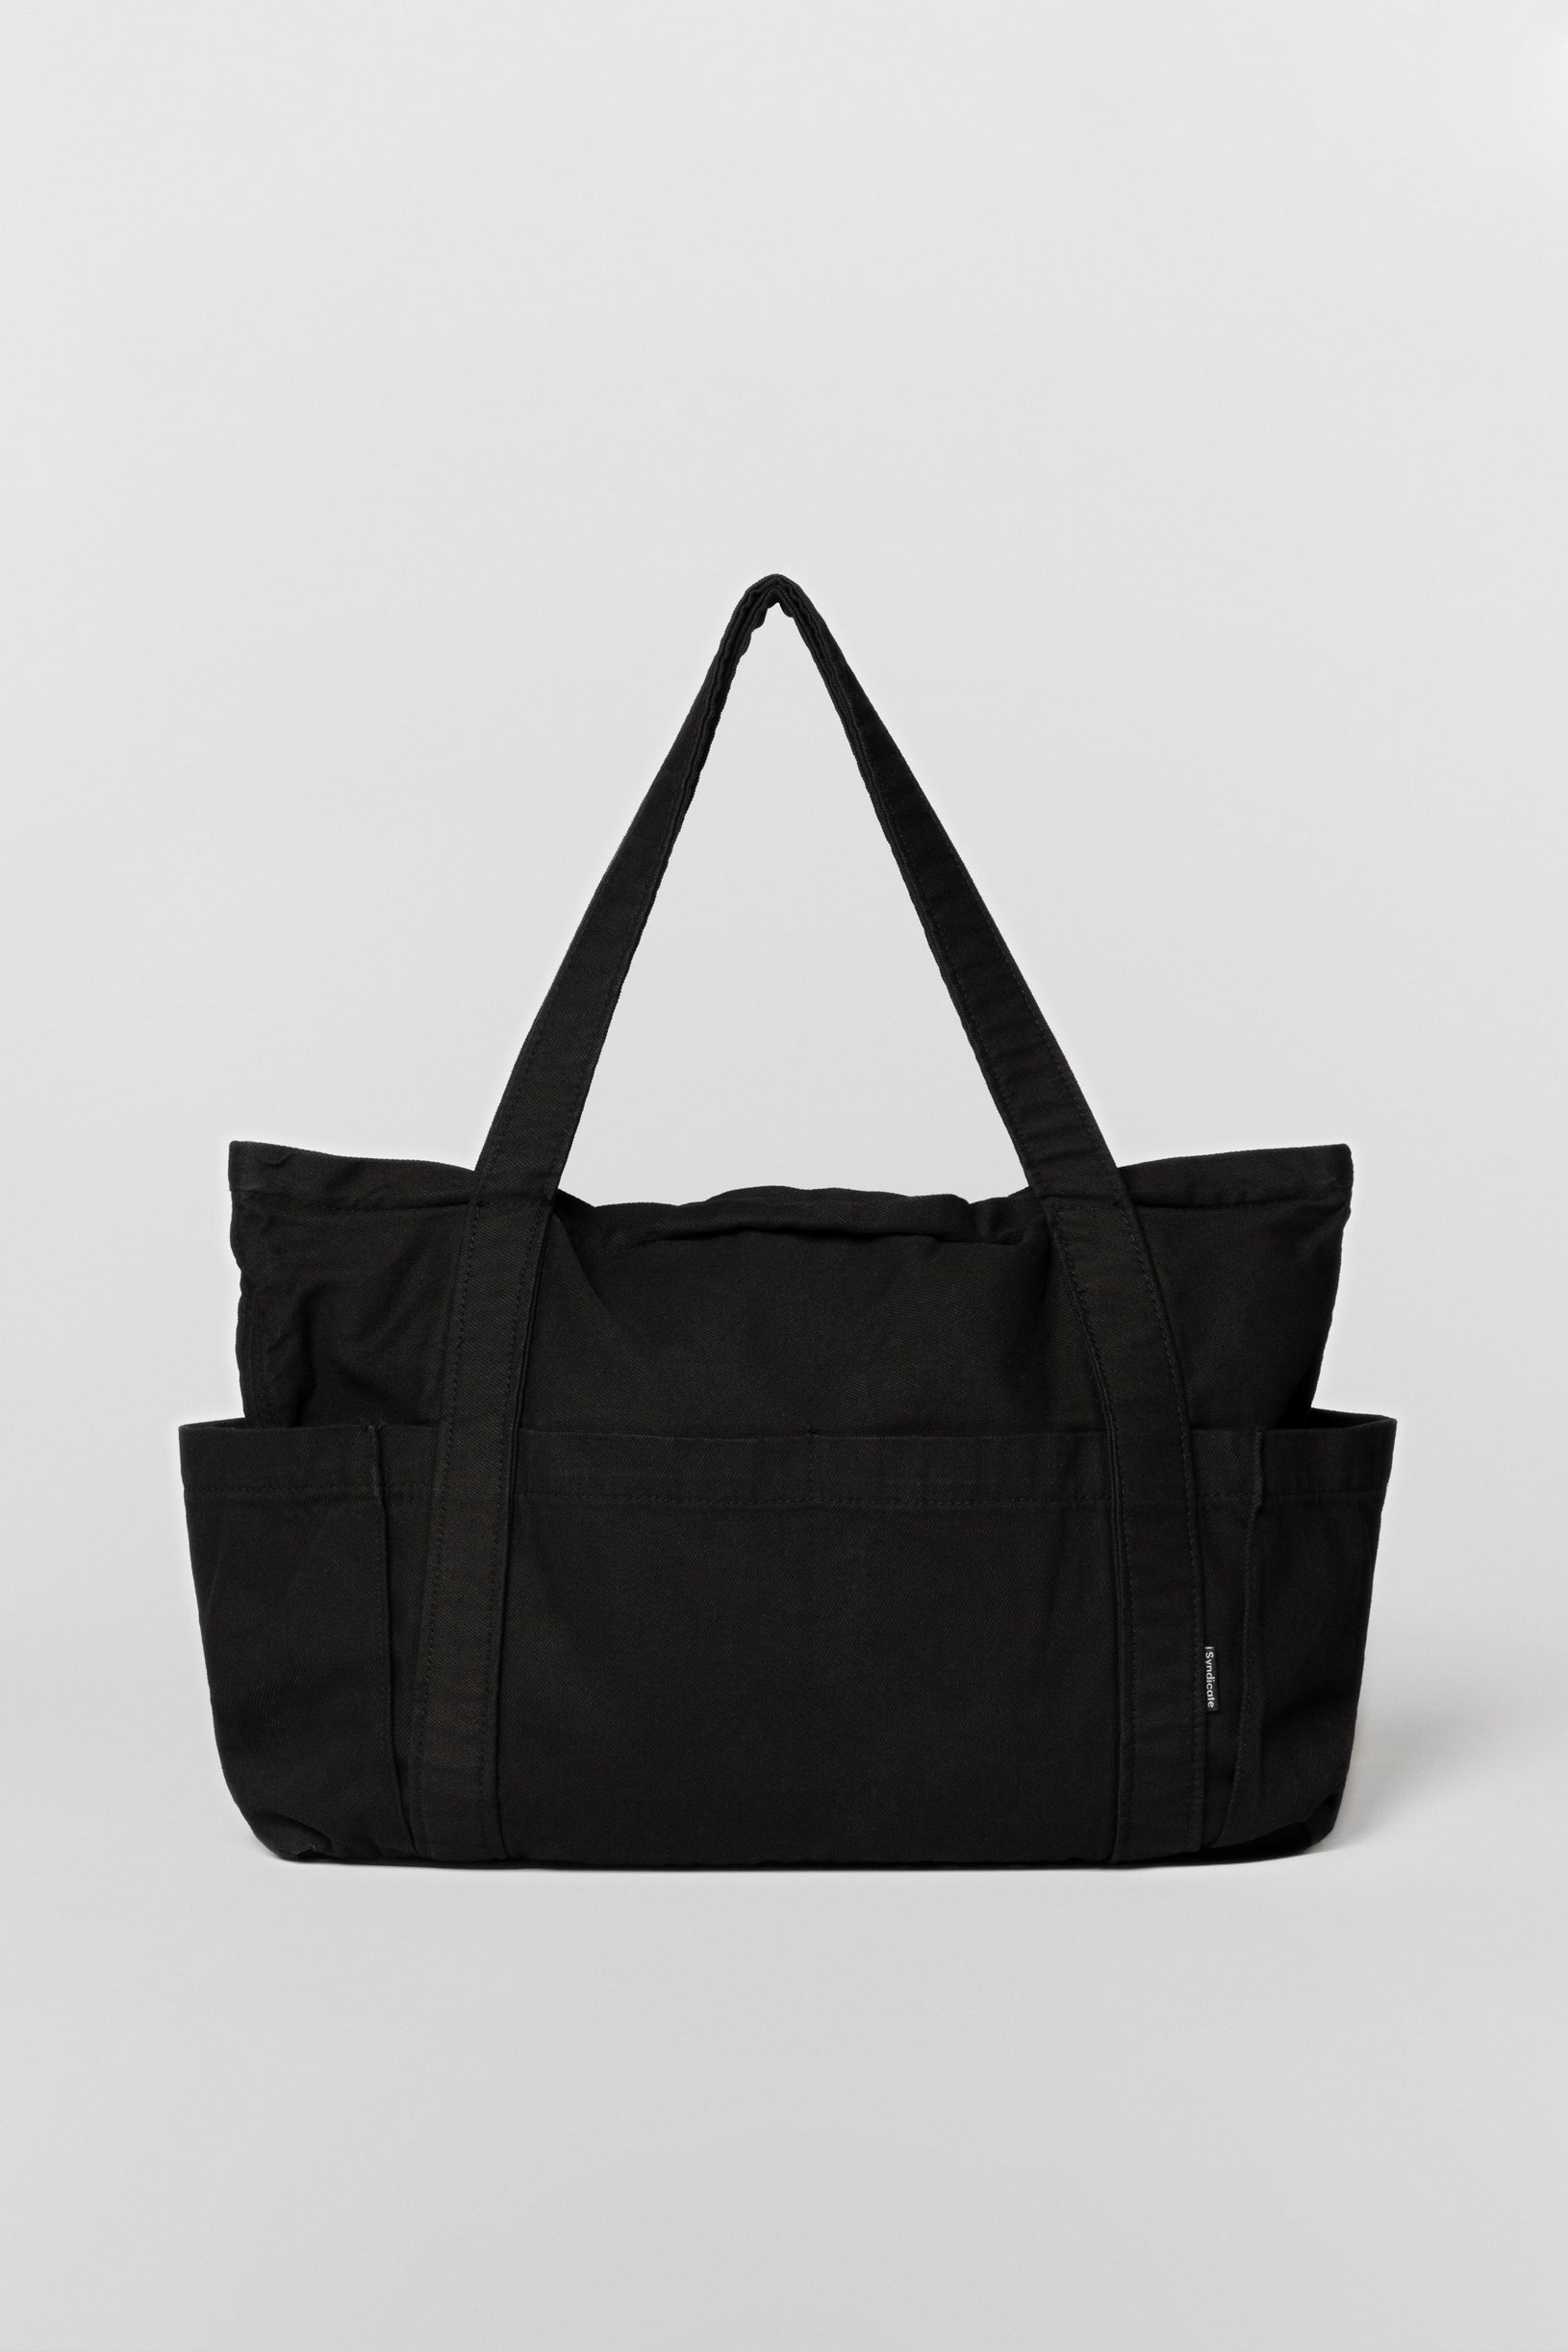 Cargo bag black